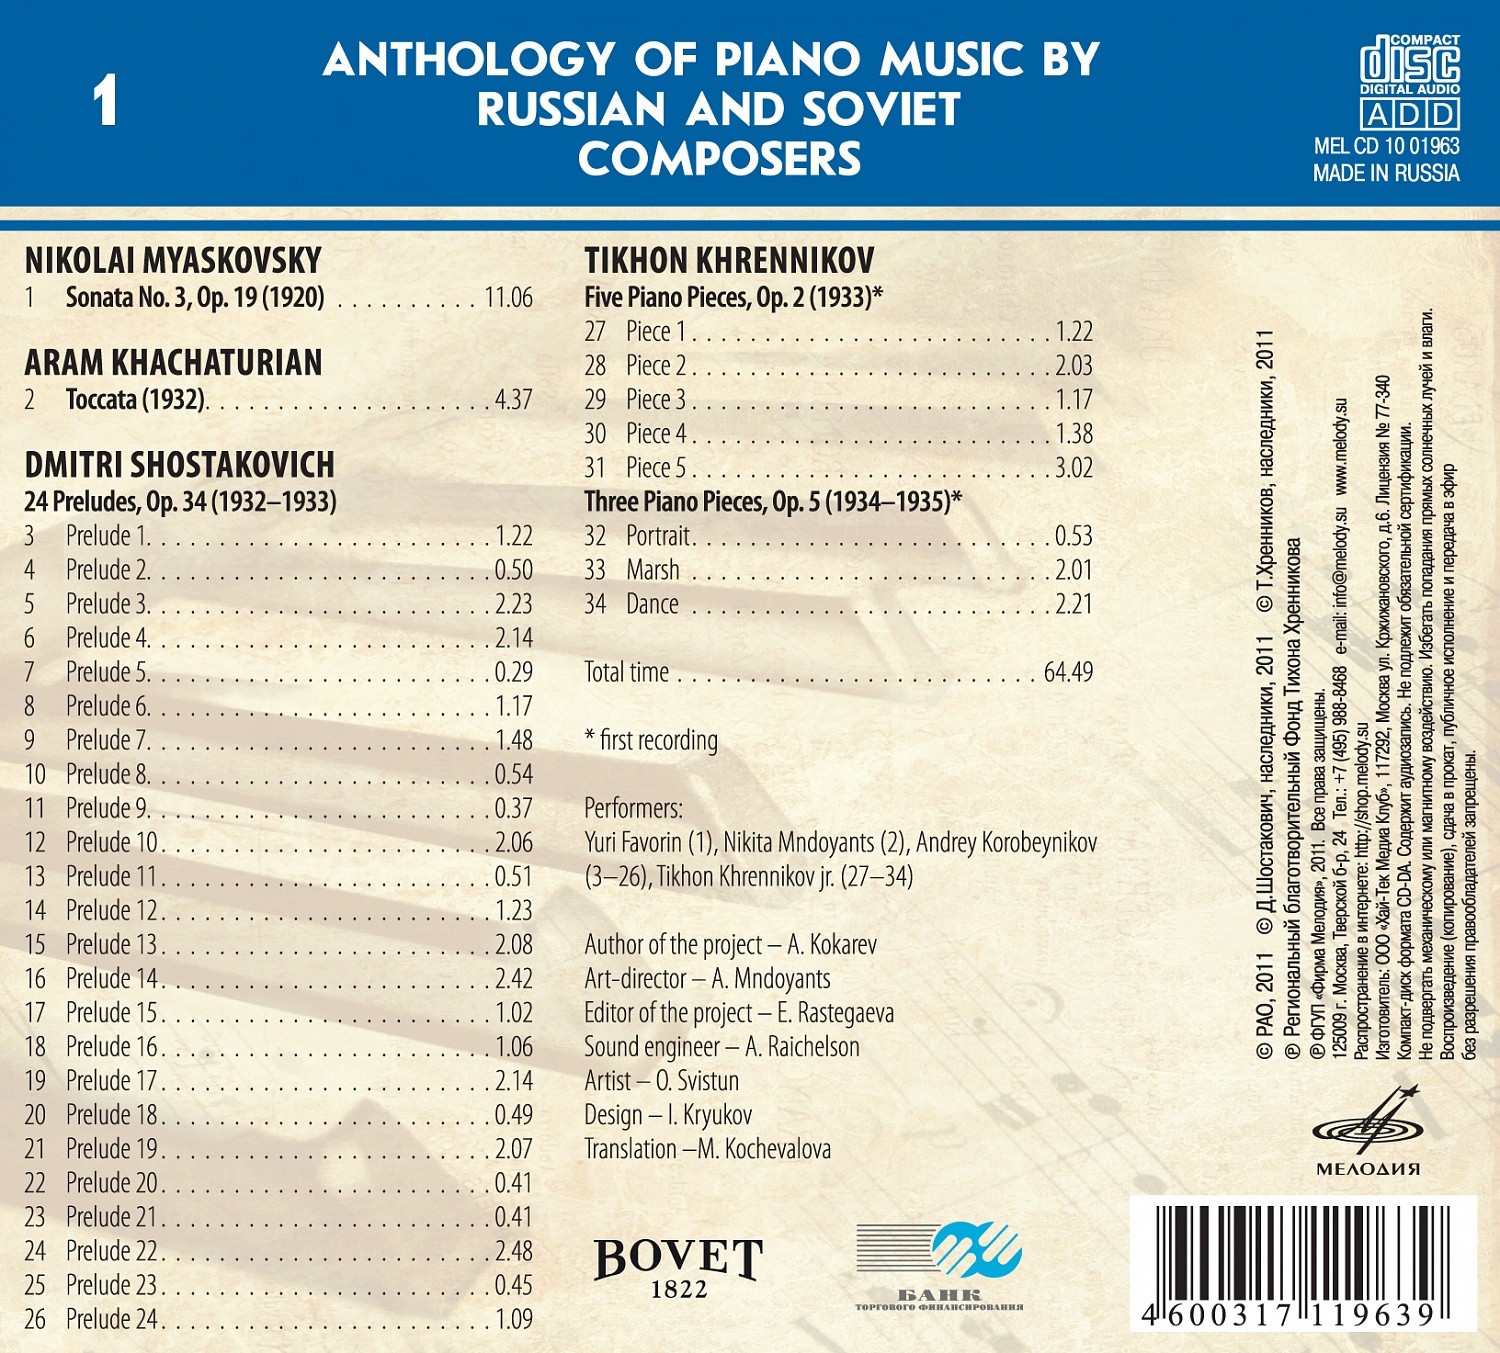 Антология фортепианной музыки русских и советских композиторов. Часть 1 (1917—1991) диск 1